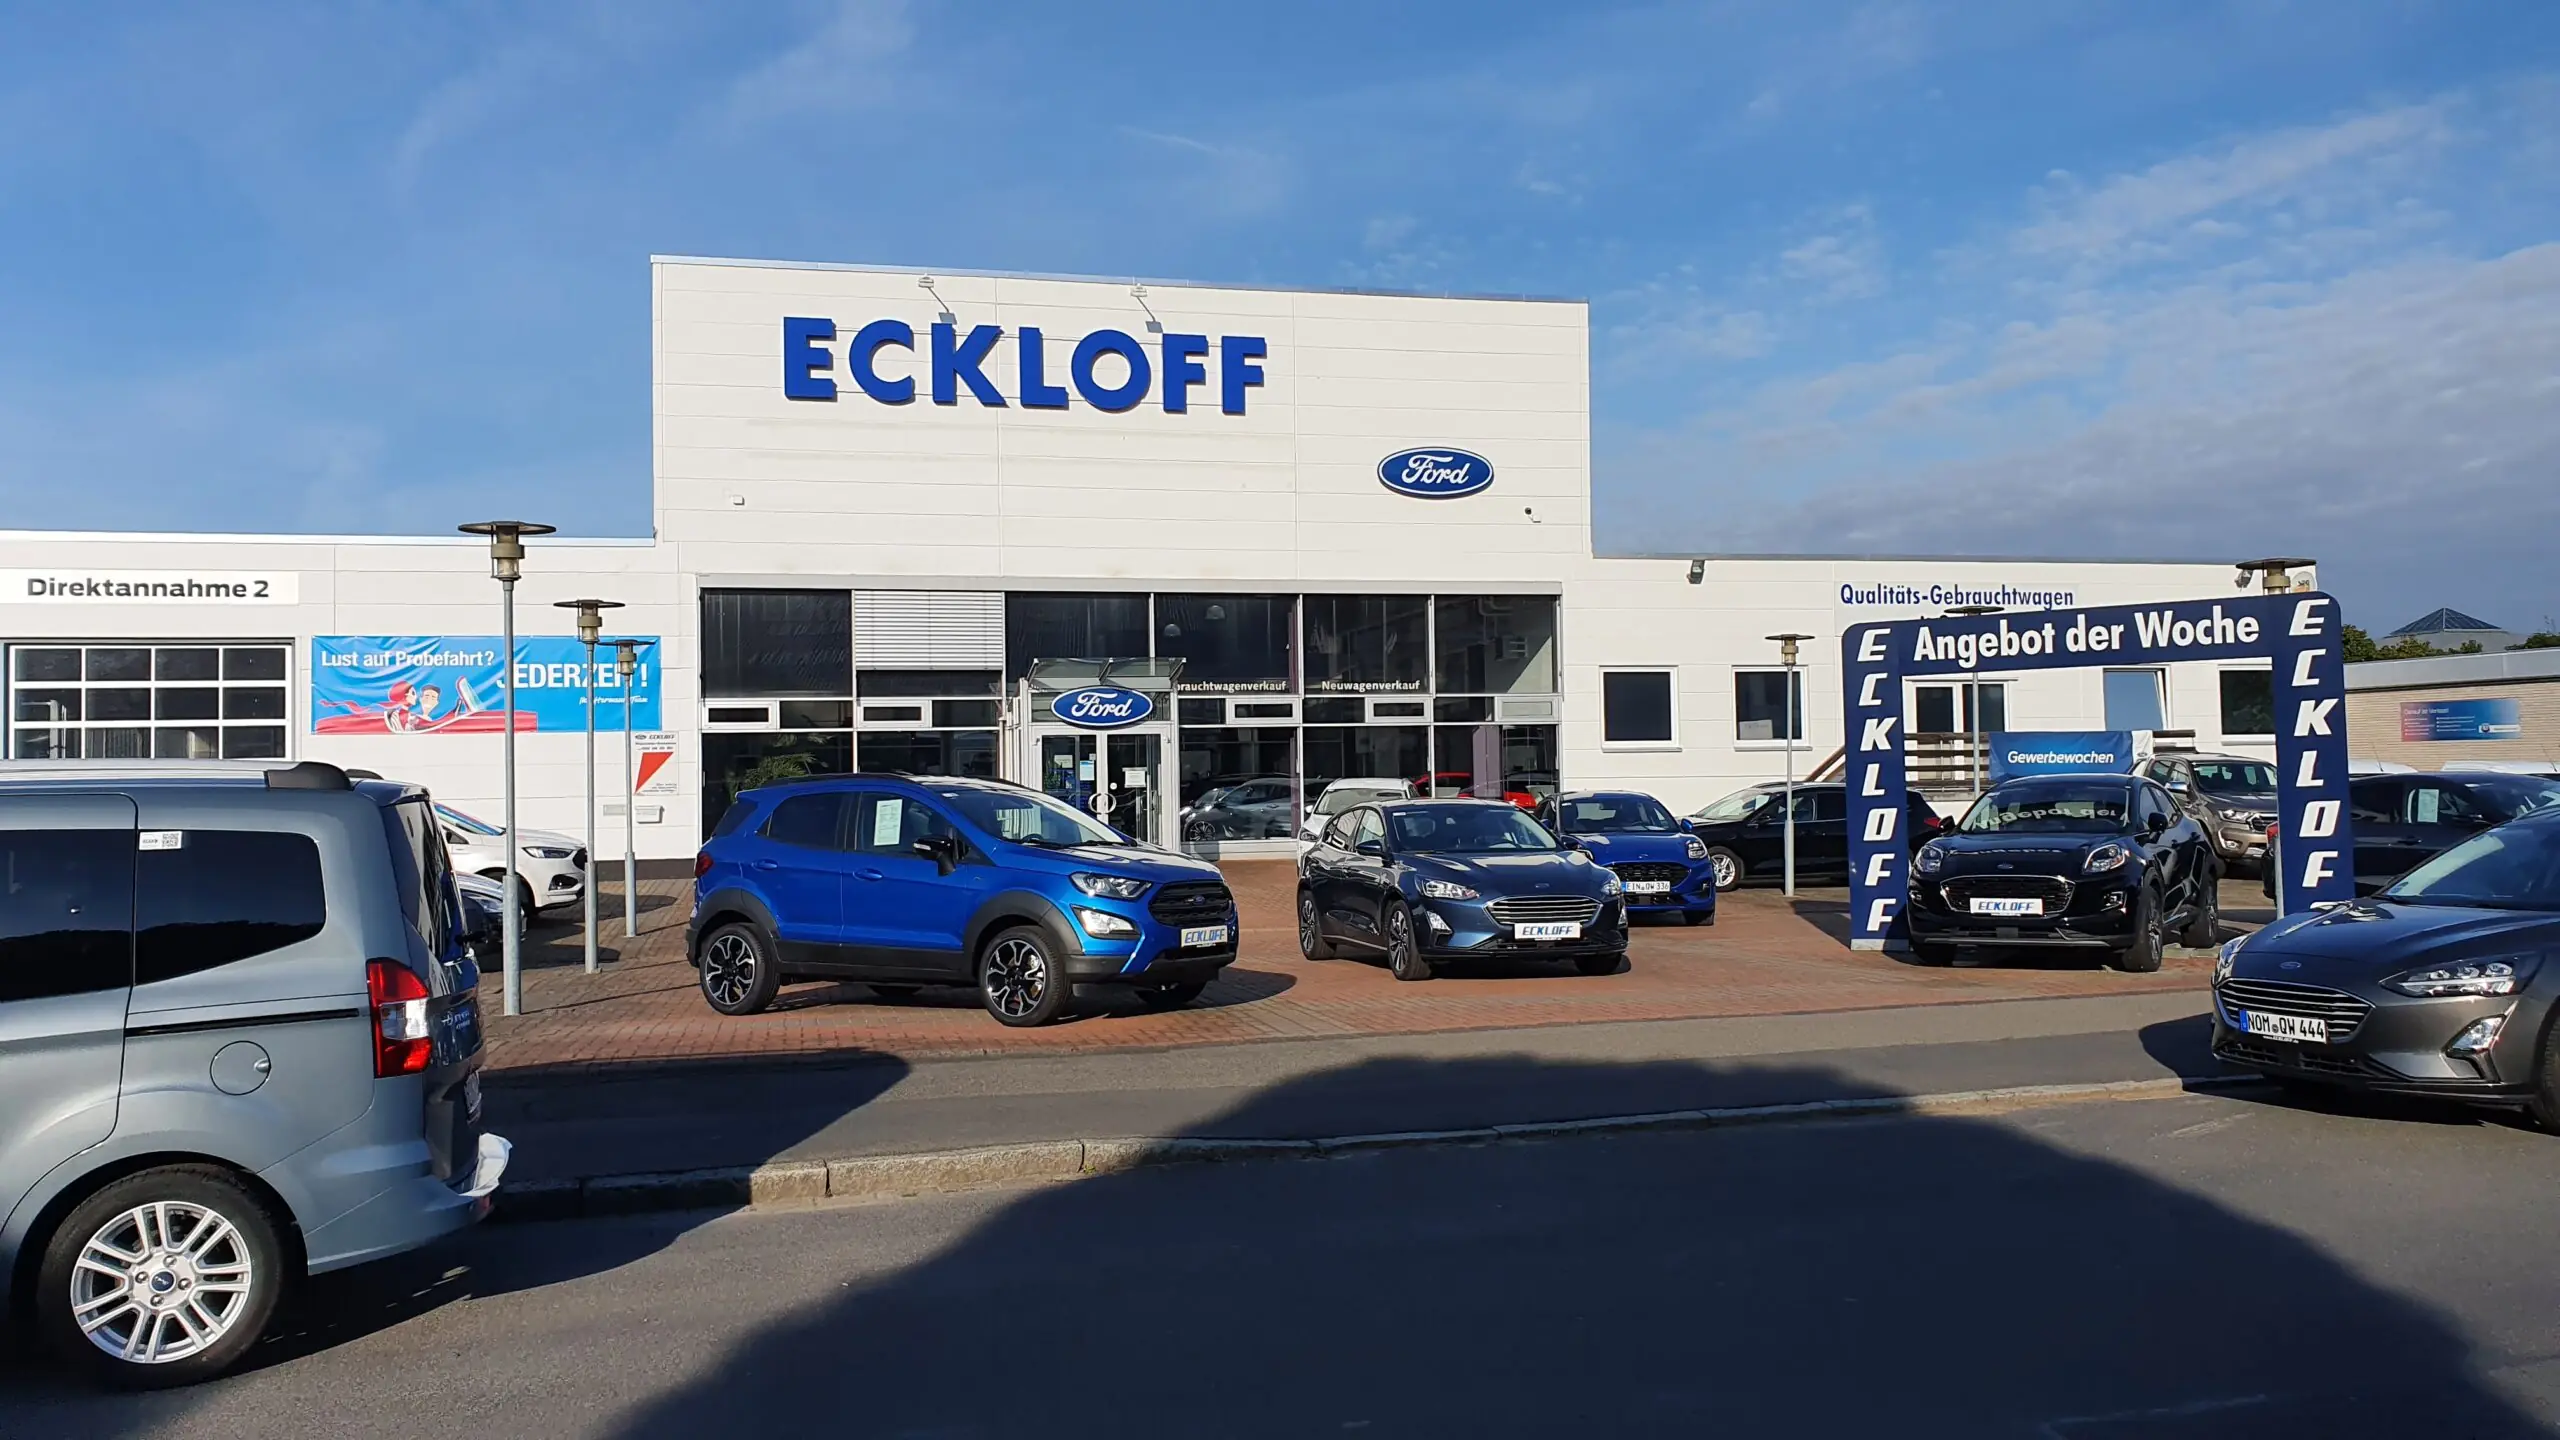 Eckloff GmbH Ford & Etrusco